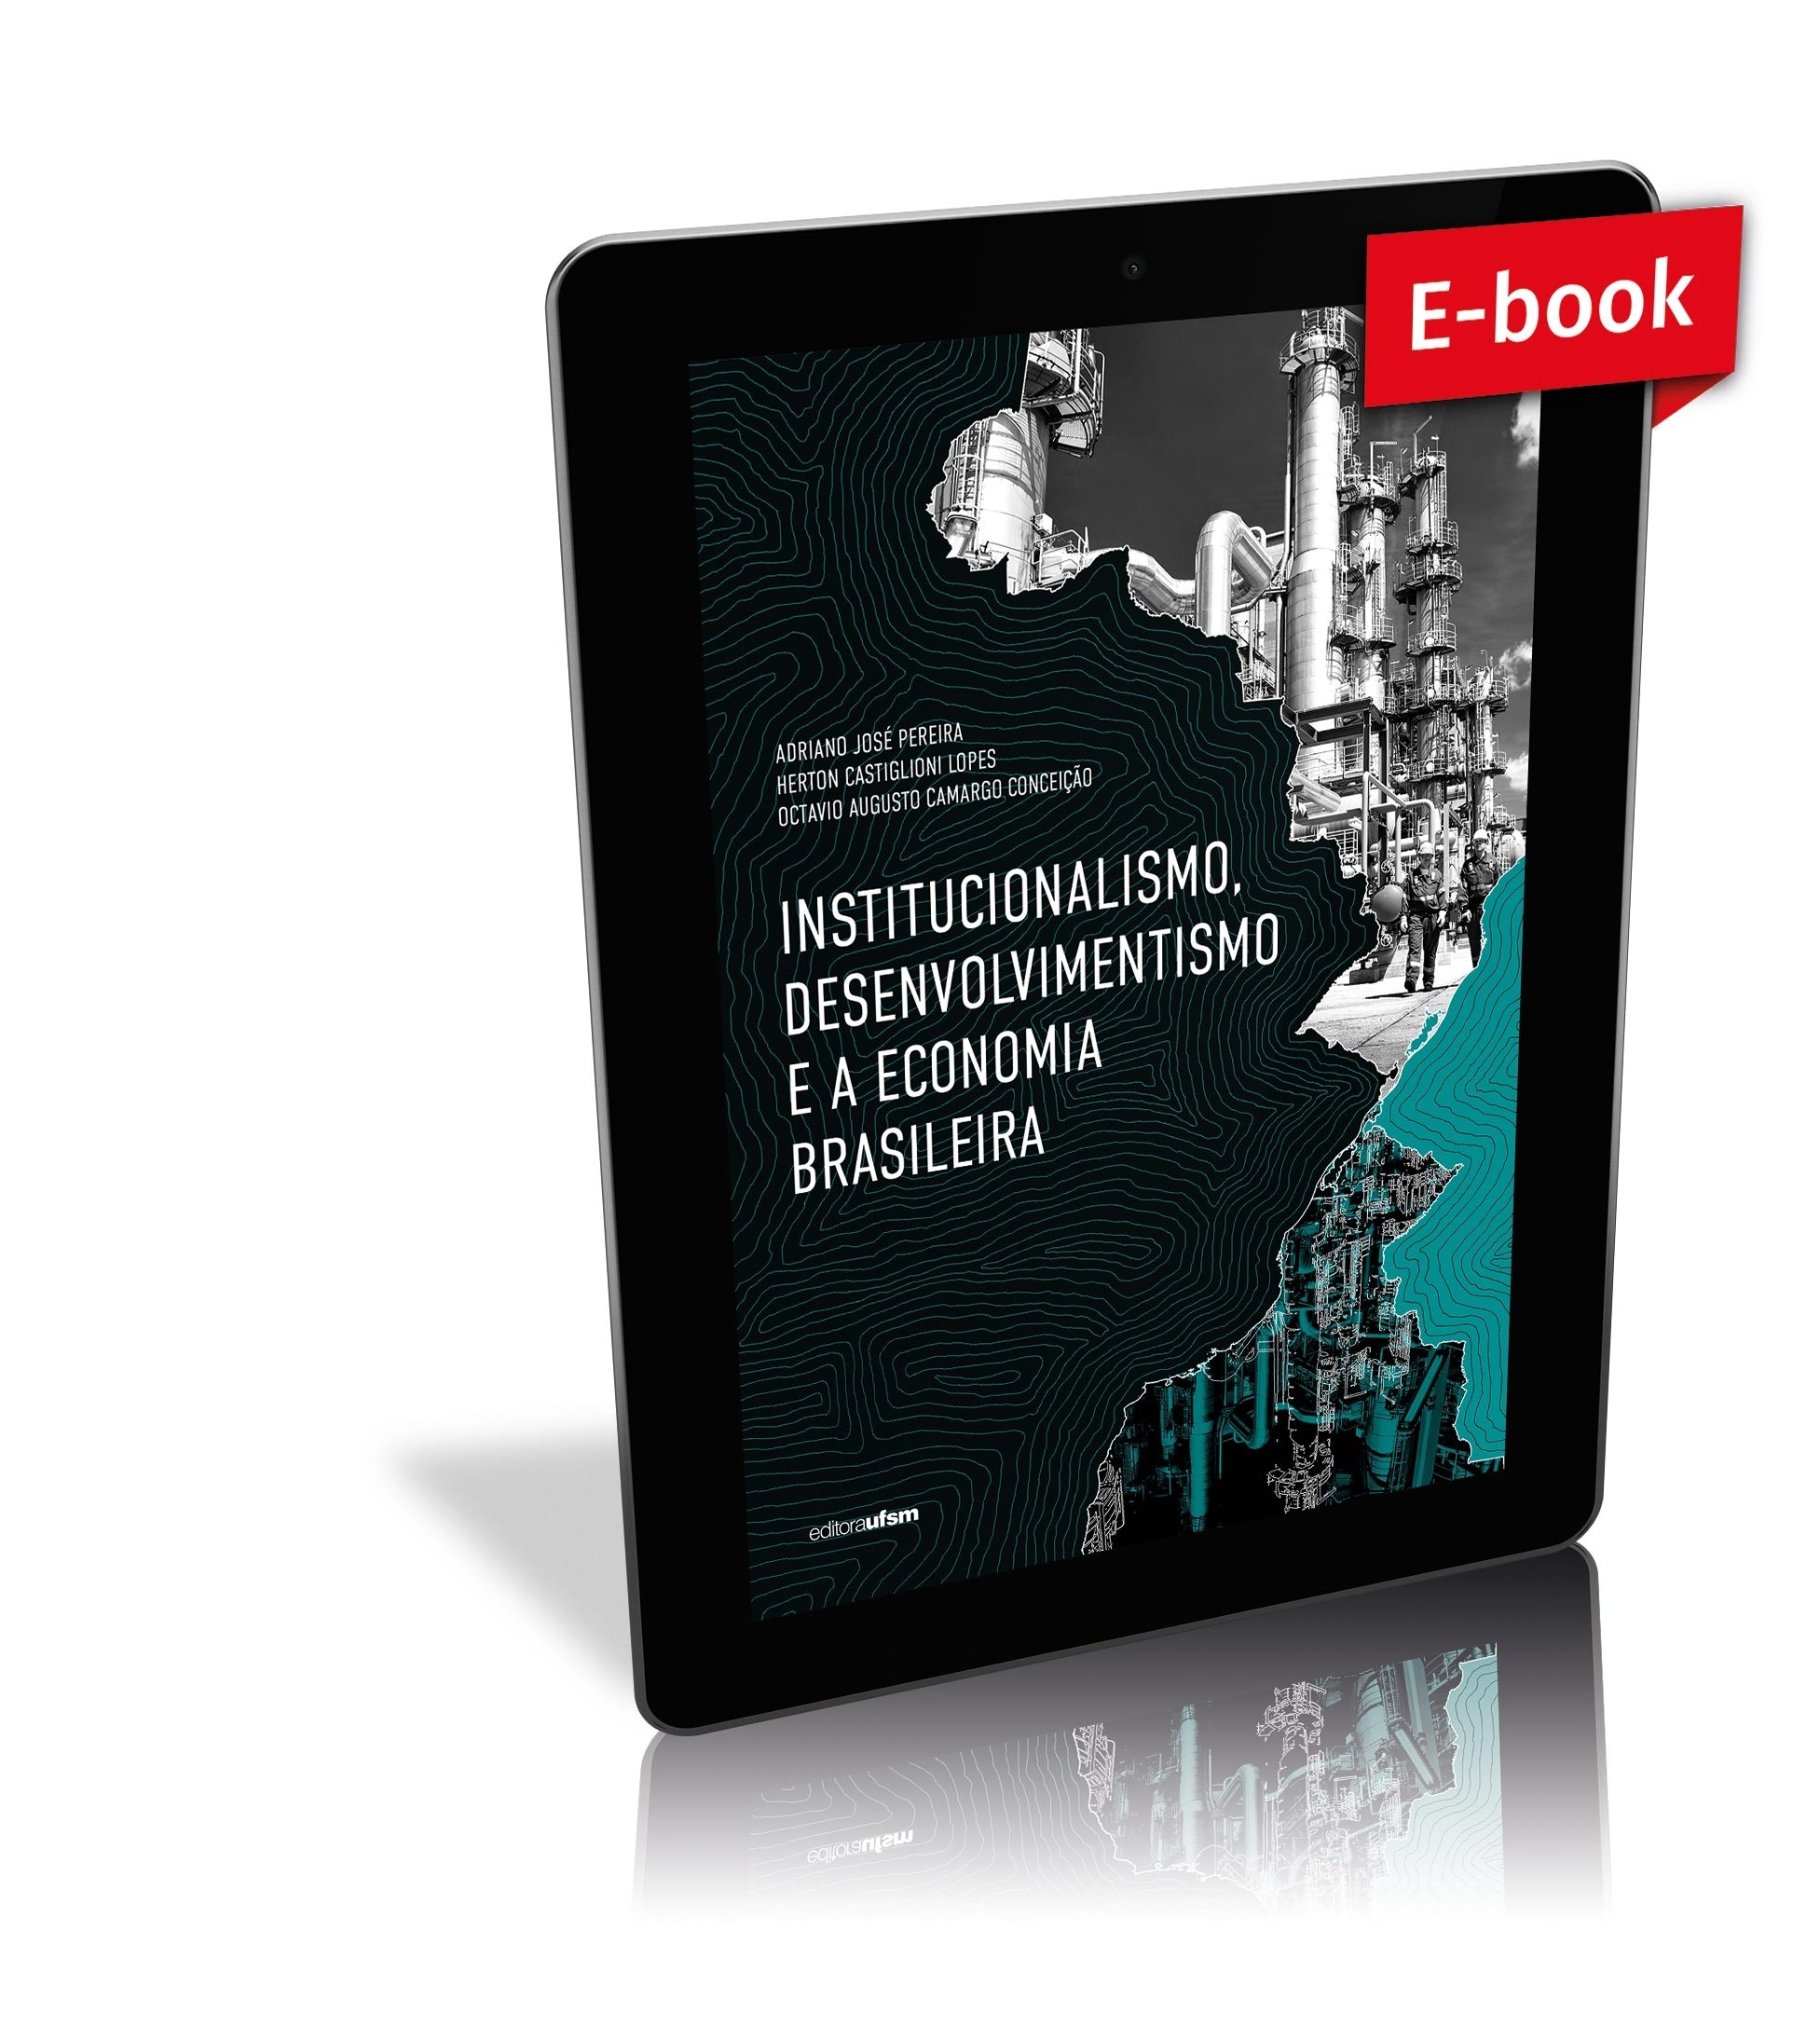 Capa do e-book Institucionalismo, desenvolvimentismo e a economia brasileira